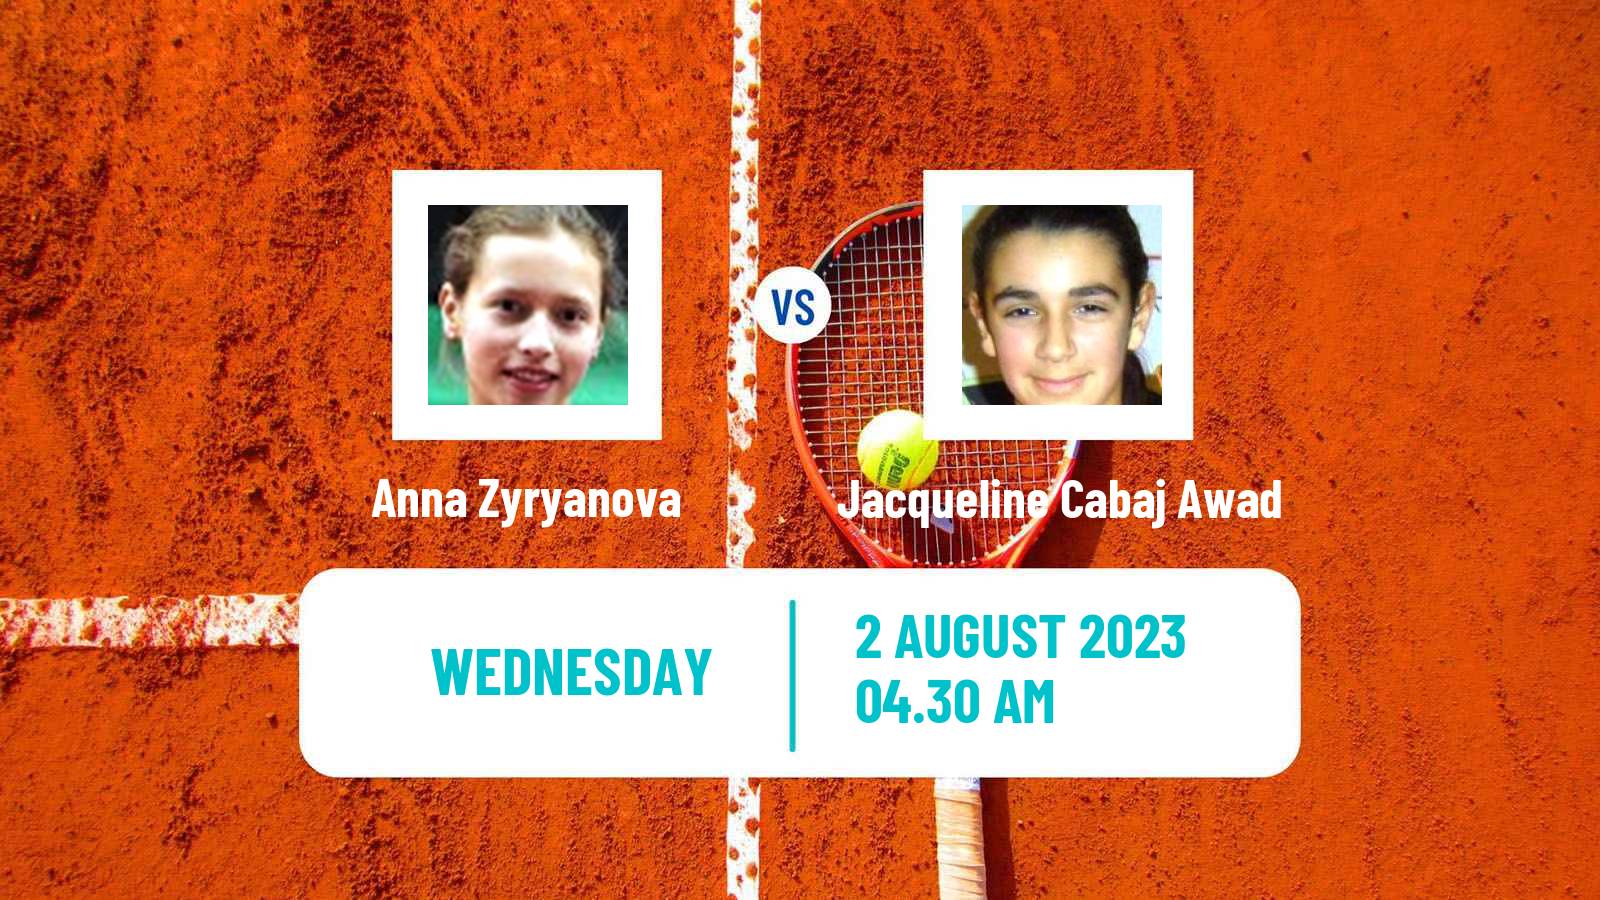 Tennis ITF W25 Koge Women Anna Zyryanova - Jacqueline Cabaj Awad